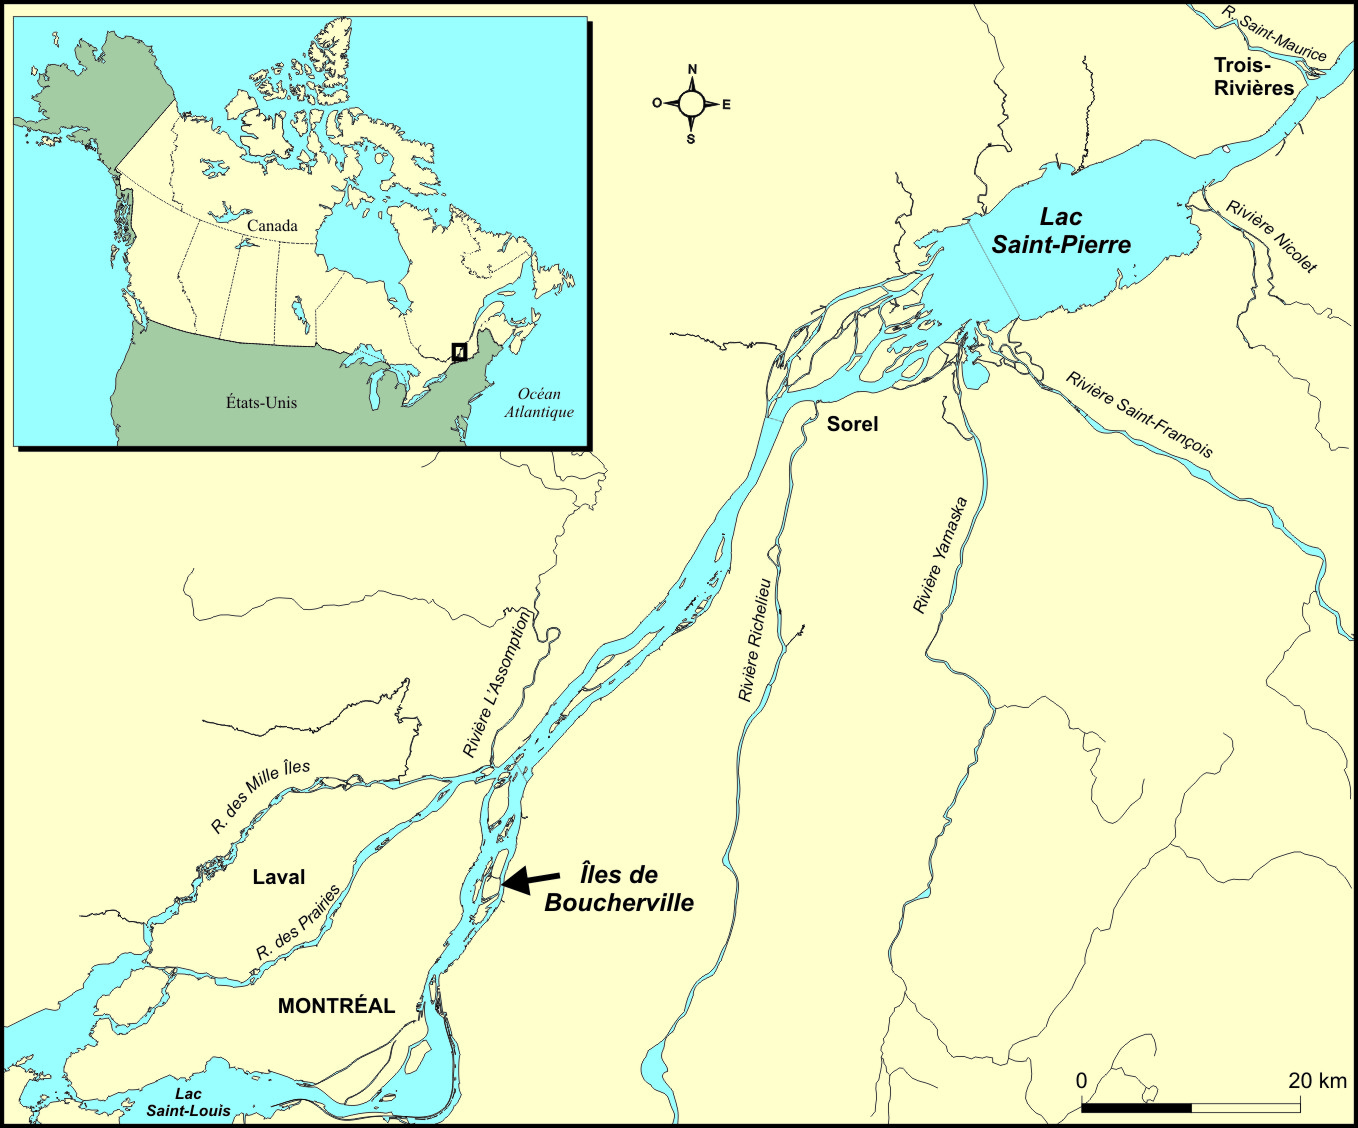 Carte illustrant le Canada et les États-Unis en mortaise avec un agrandissement sur le tronçon fluvial du Saint-Laurent entre Montréal et Trois-Rivières, incluant les Îles de Boucherville